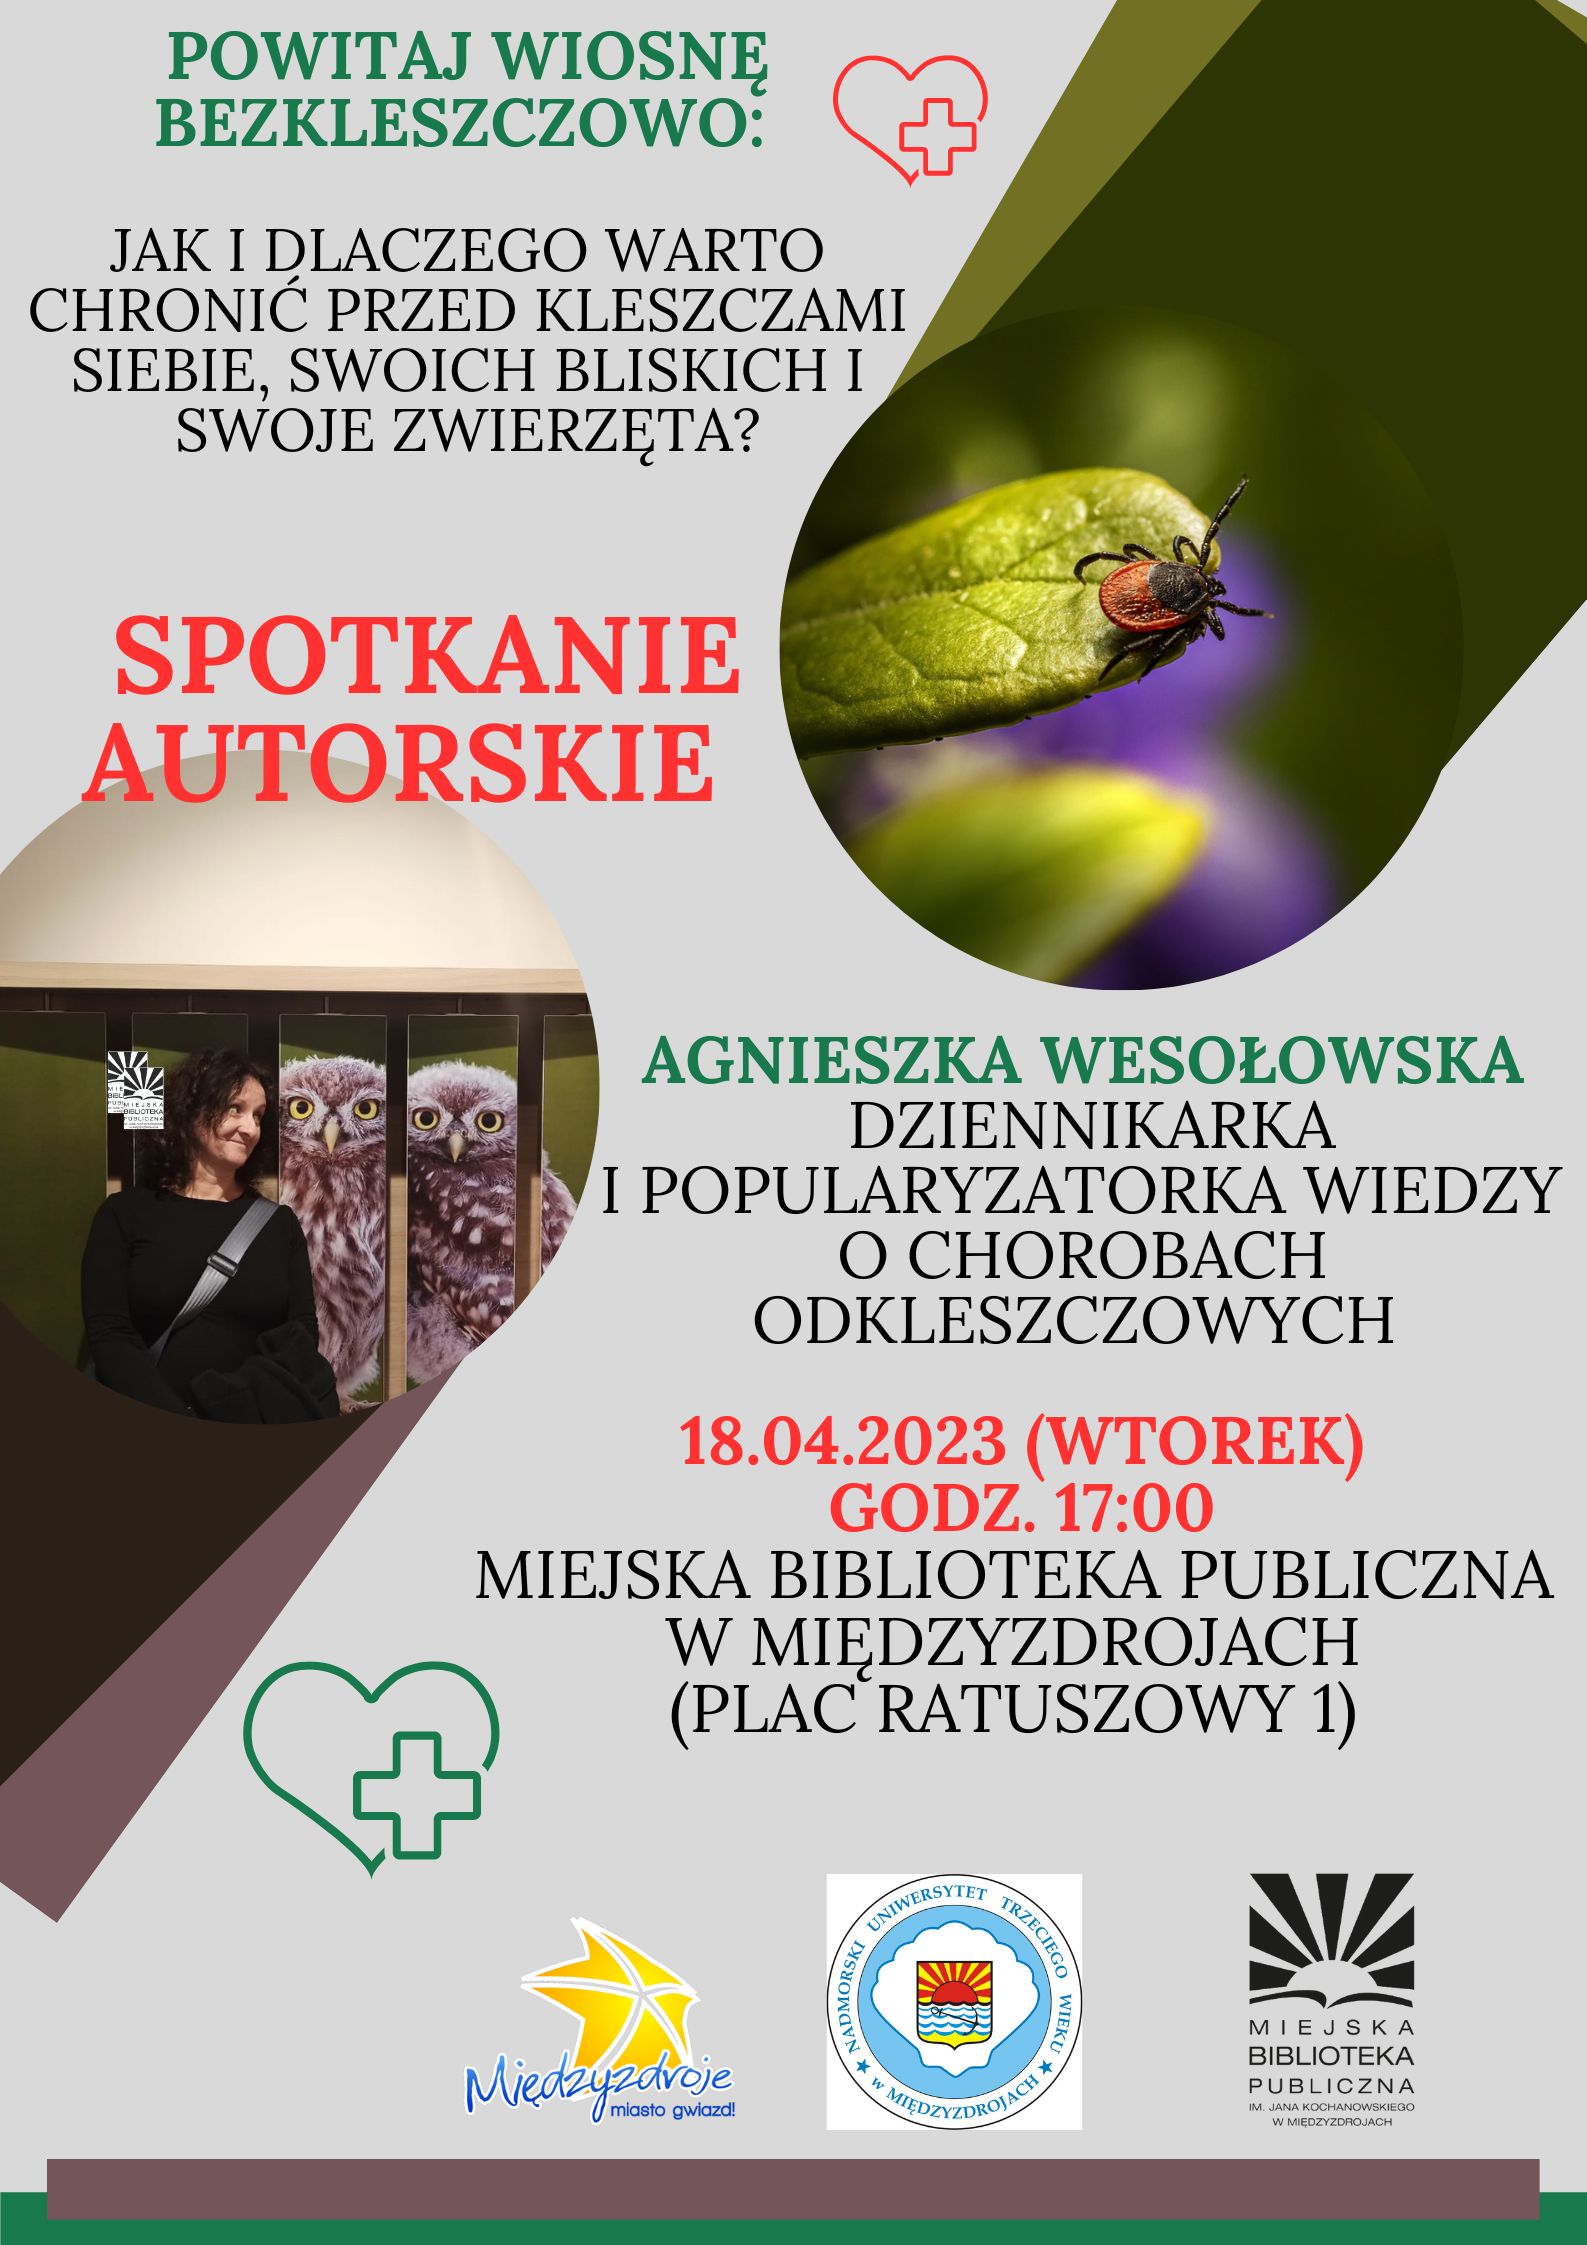 Spotkanie autorskie z Agnieszka Wesołowską